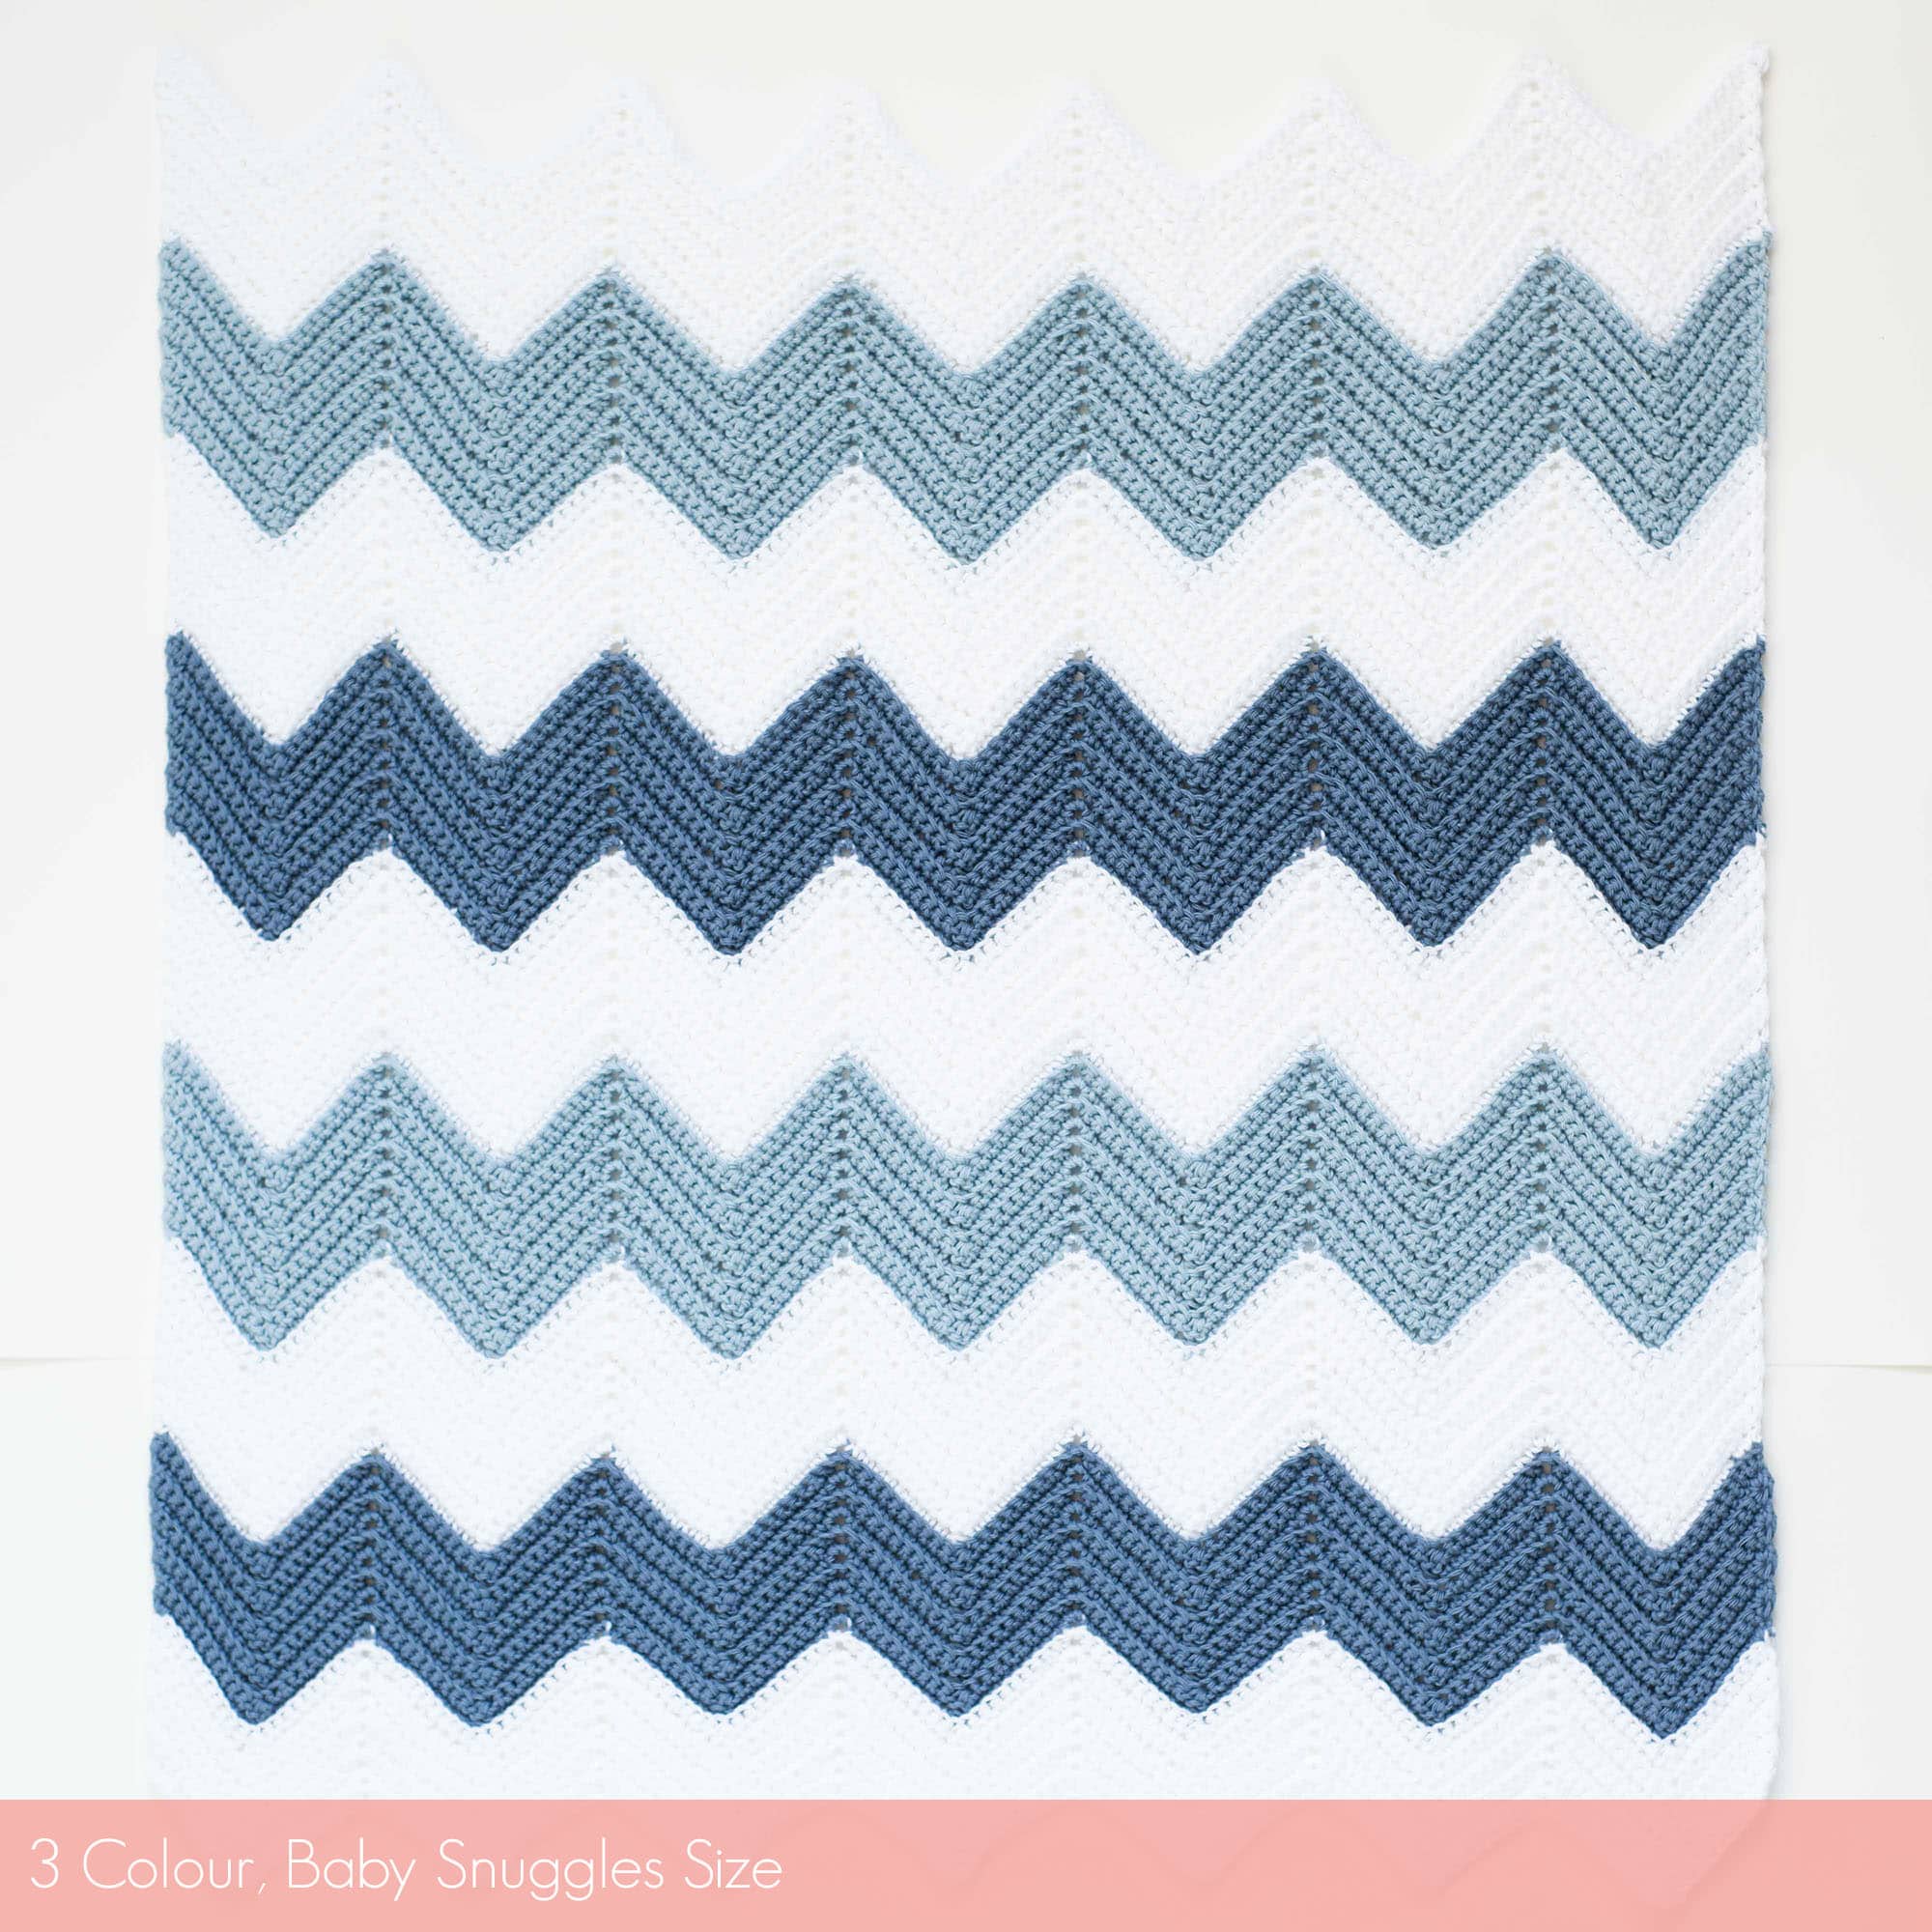 Calm Chevron Blanket 3 Colour | Homelea Lass contemporary crochet